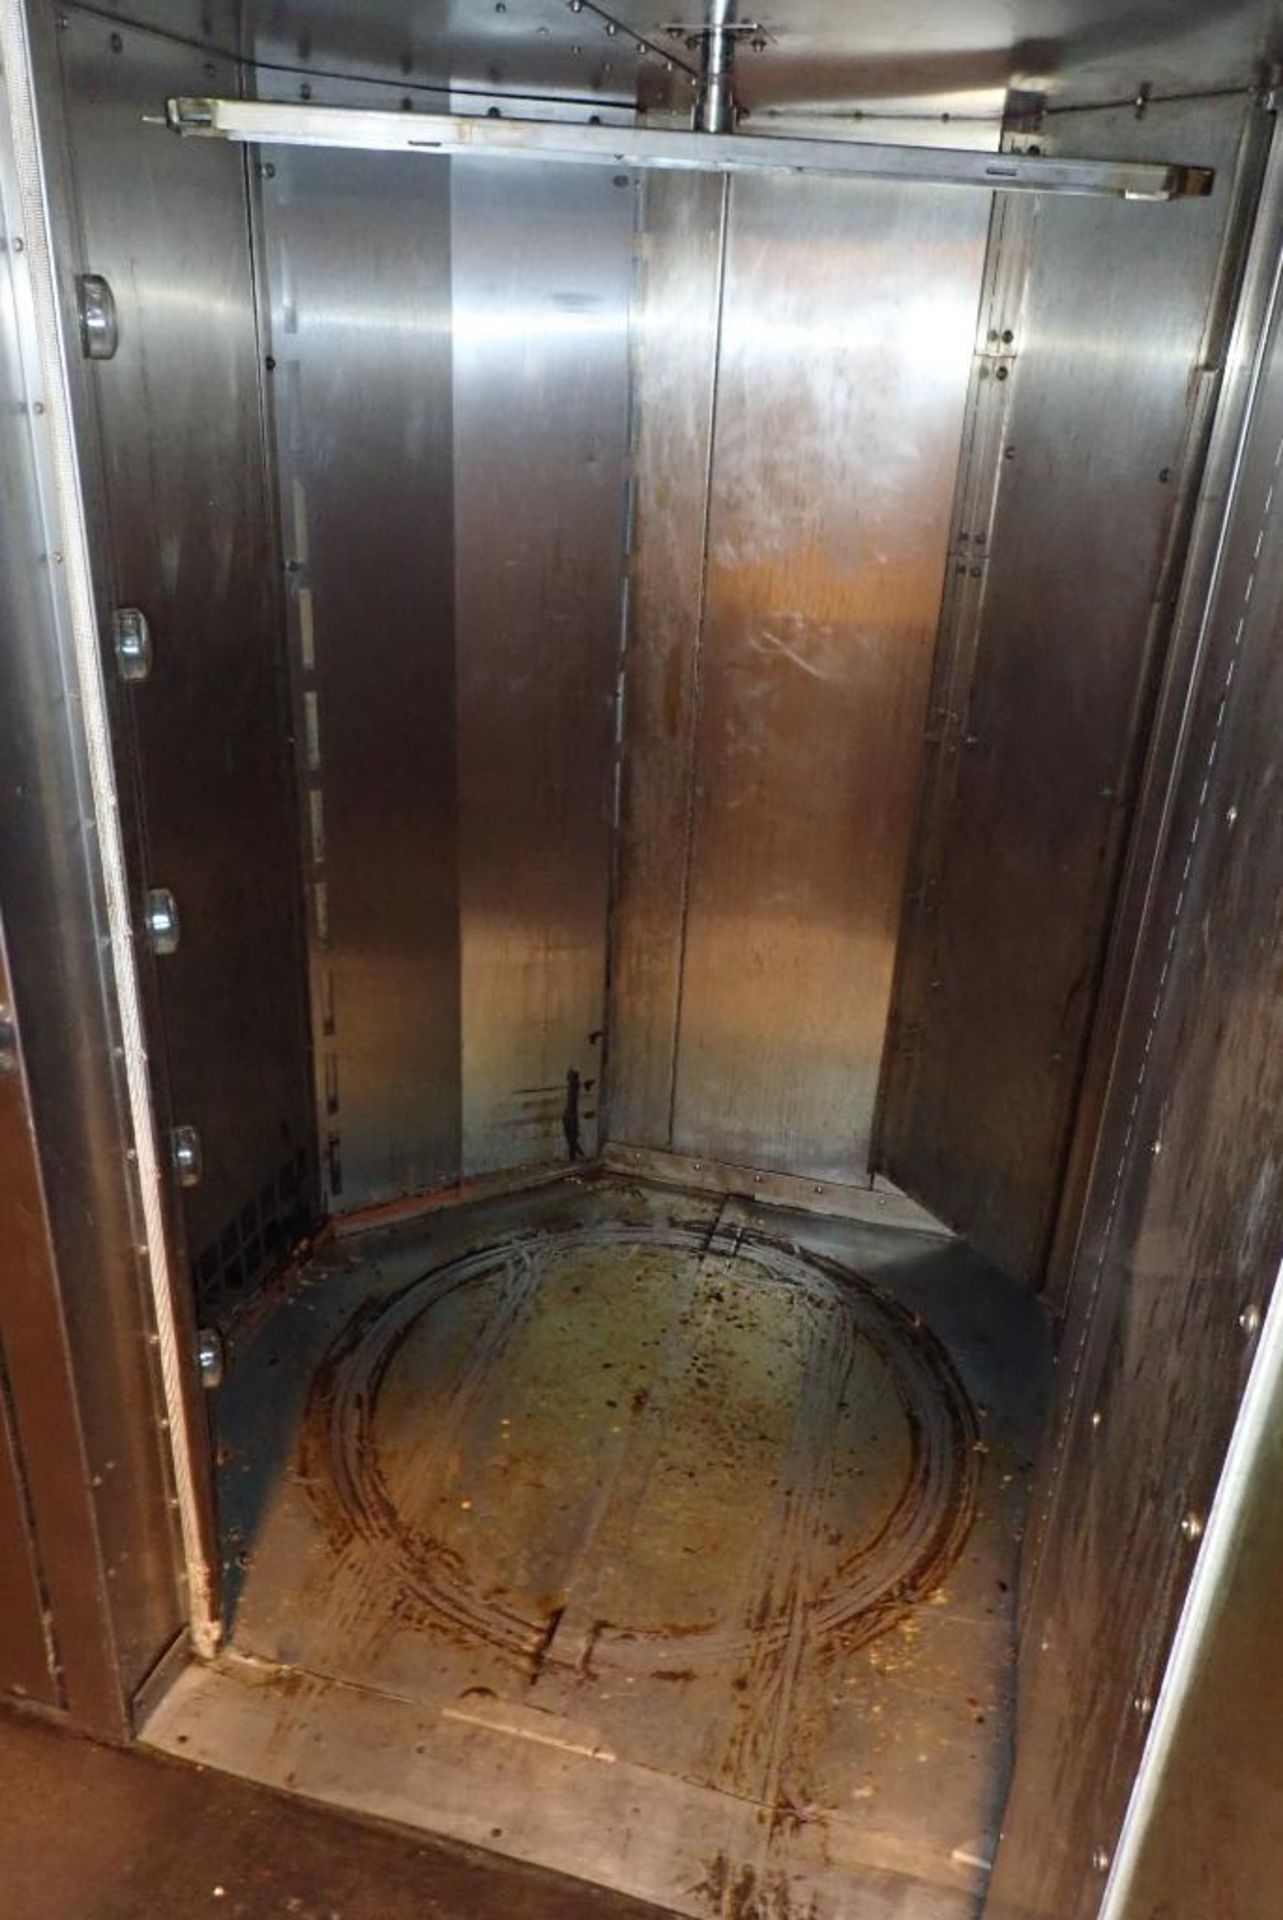 Hobart double rack oven - Image 6 of 16